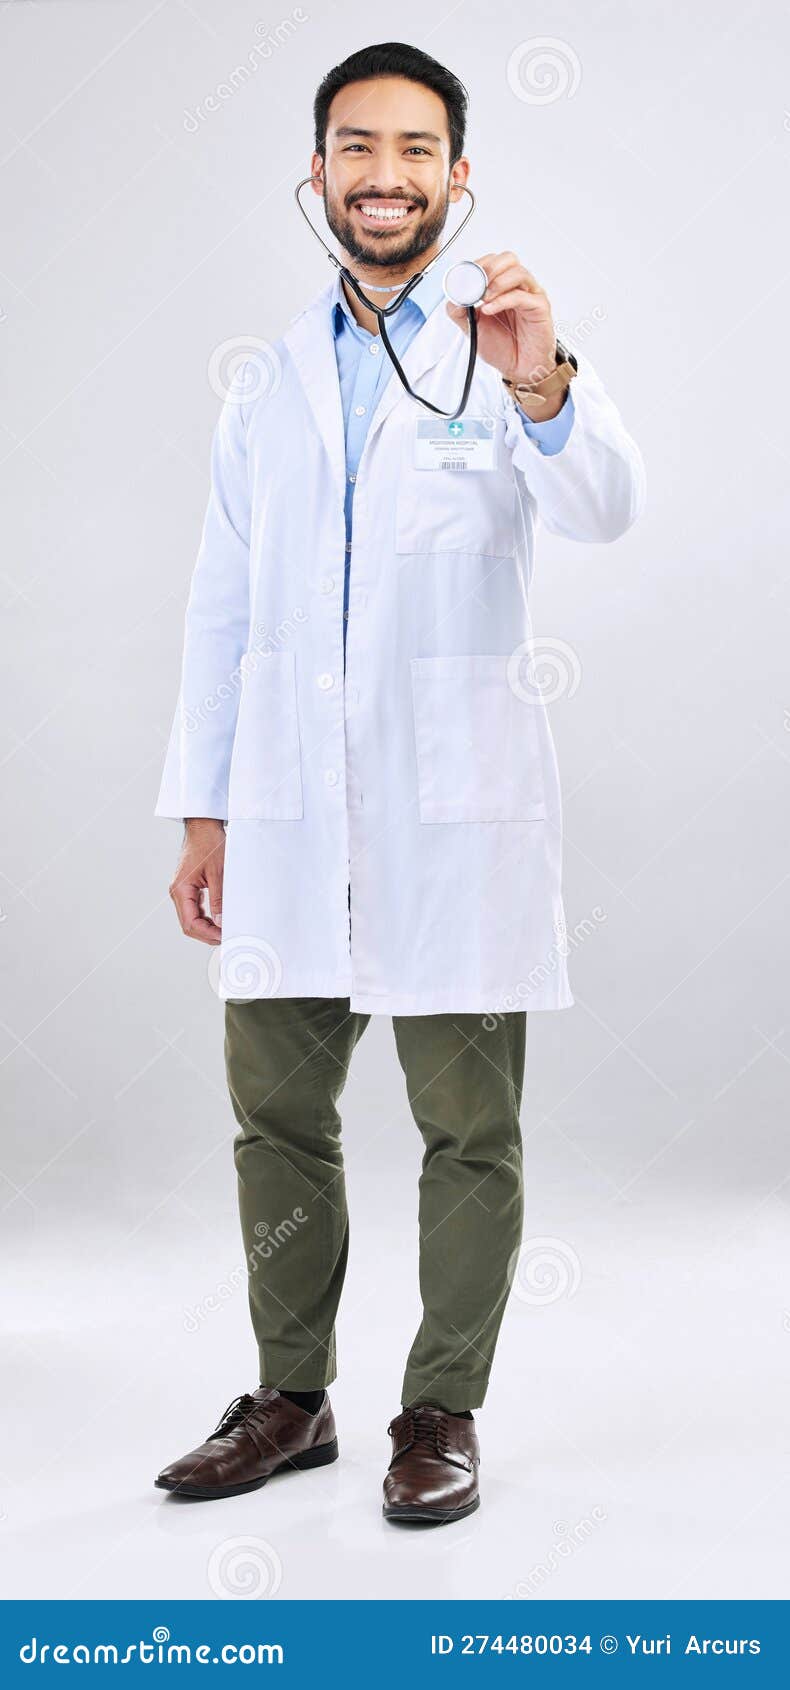 Médico estetoscópio profissional de saúde ilustração, médico segurando um  estetoscópio, criança, rosto png